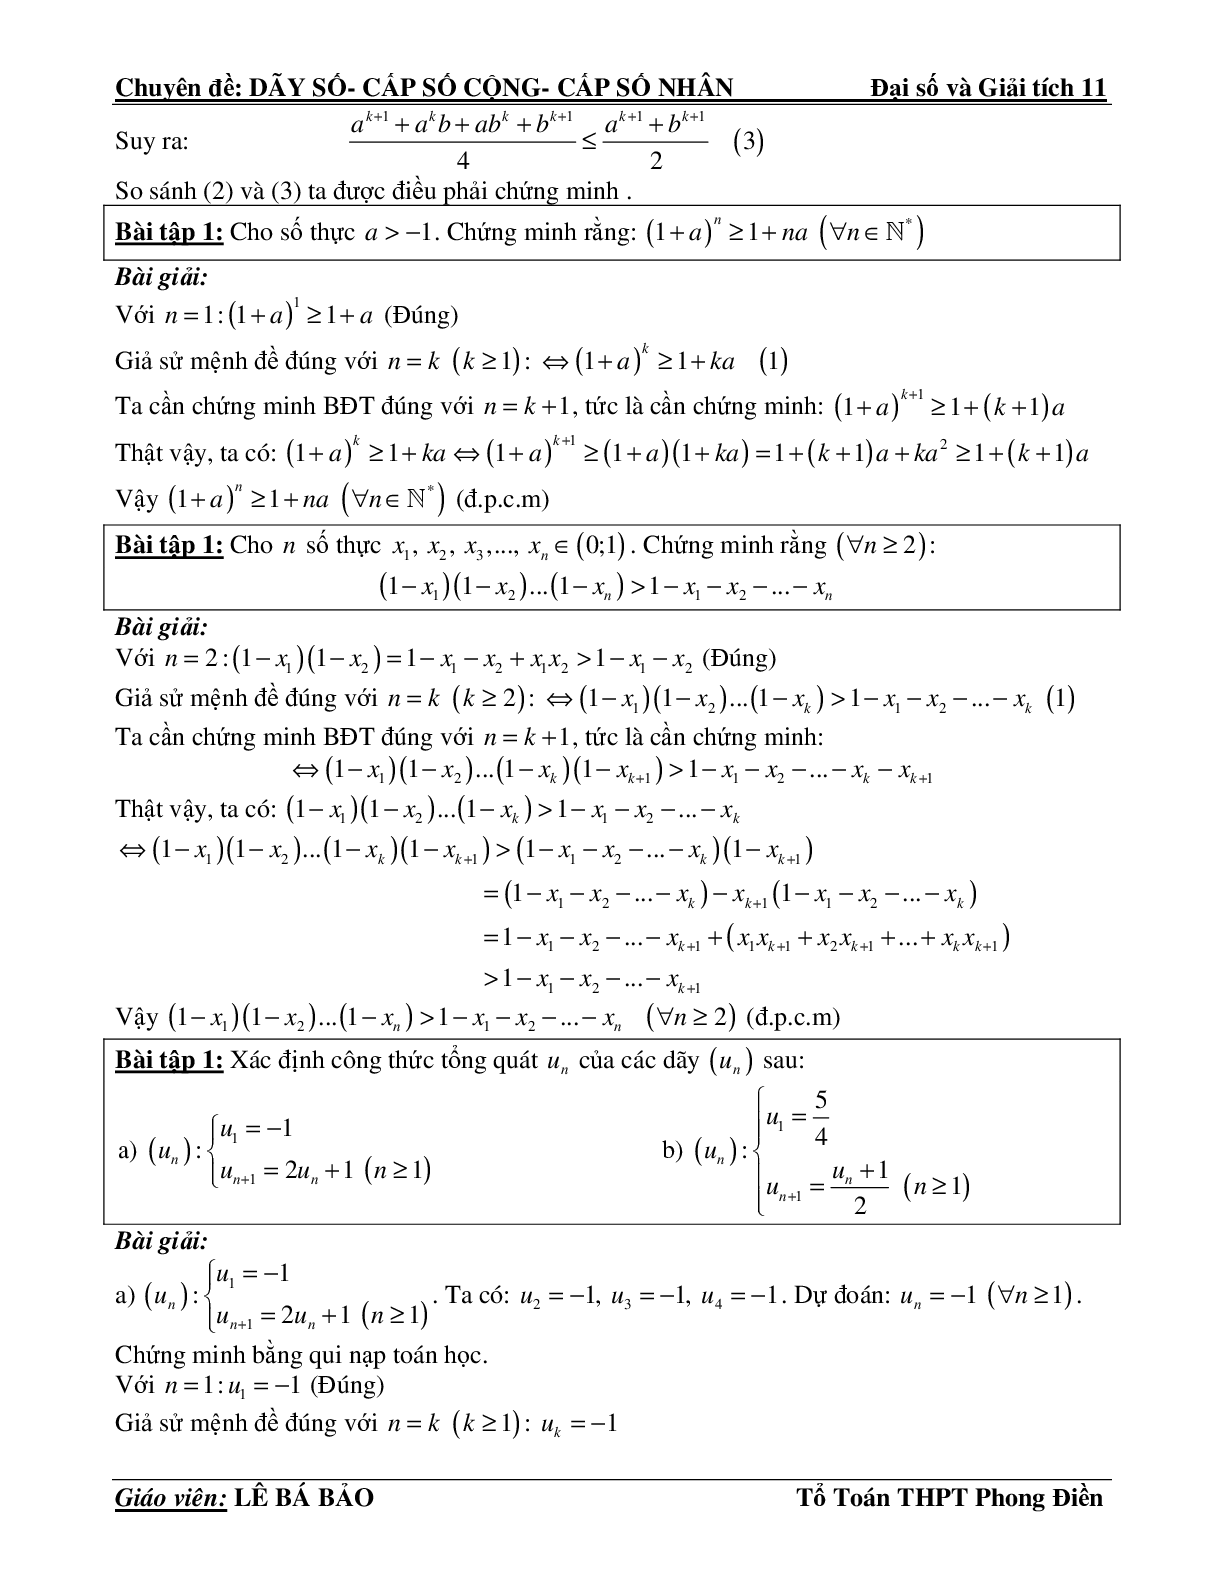 Bài tập phương pháp quy nạp toán học (trang 6)